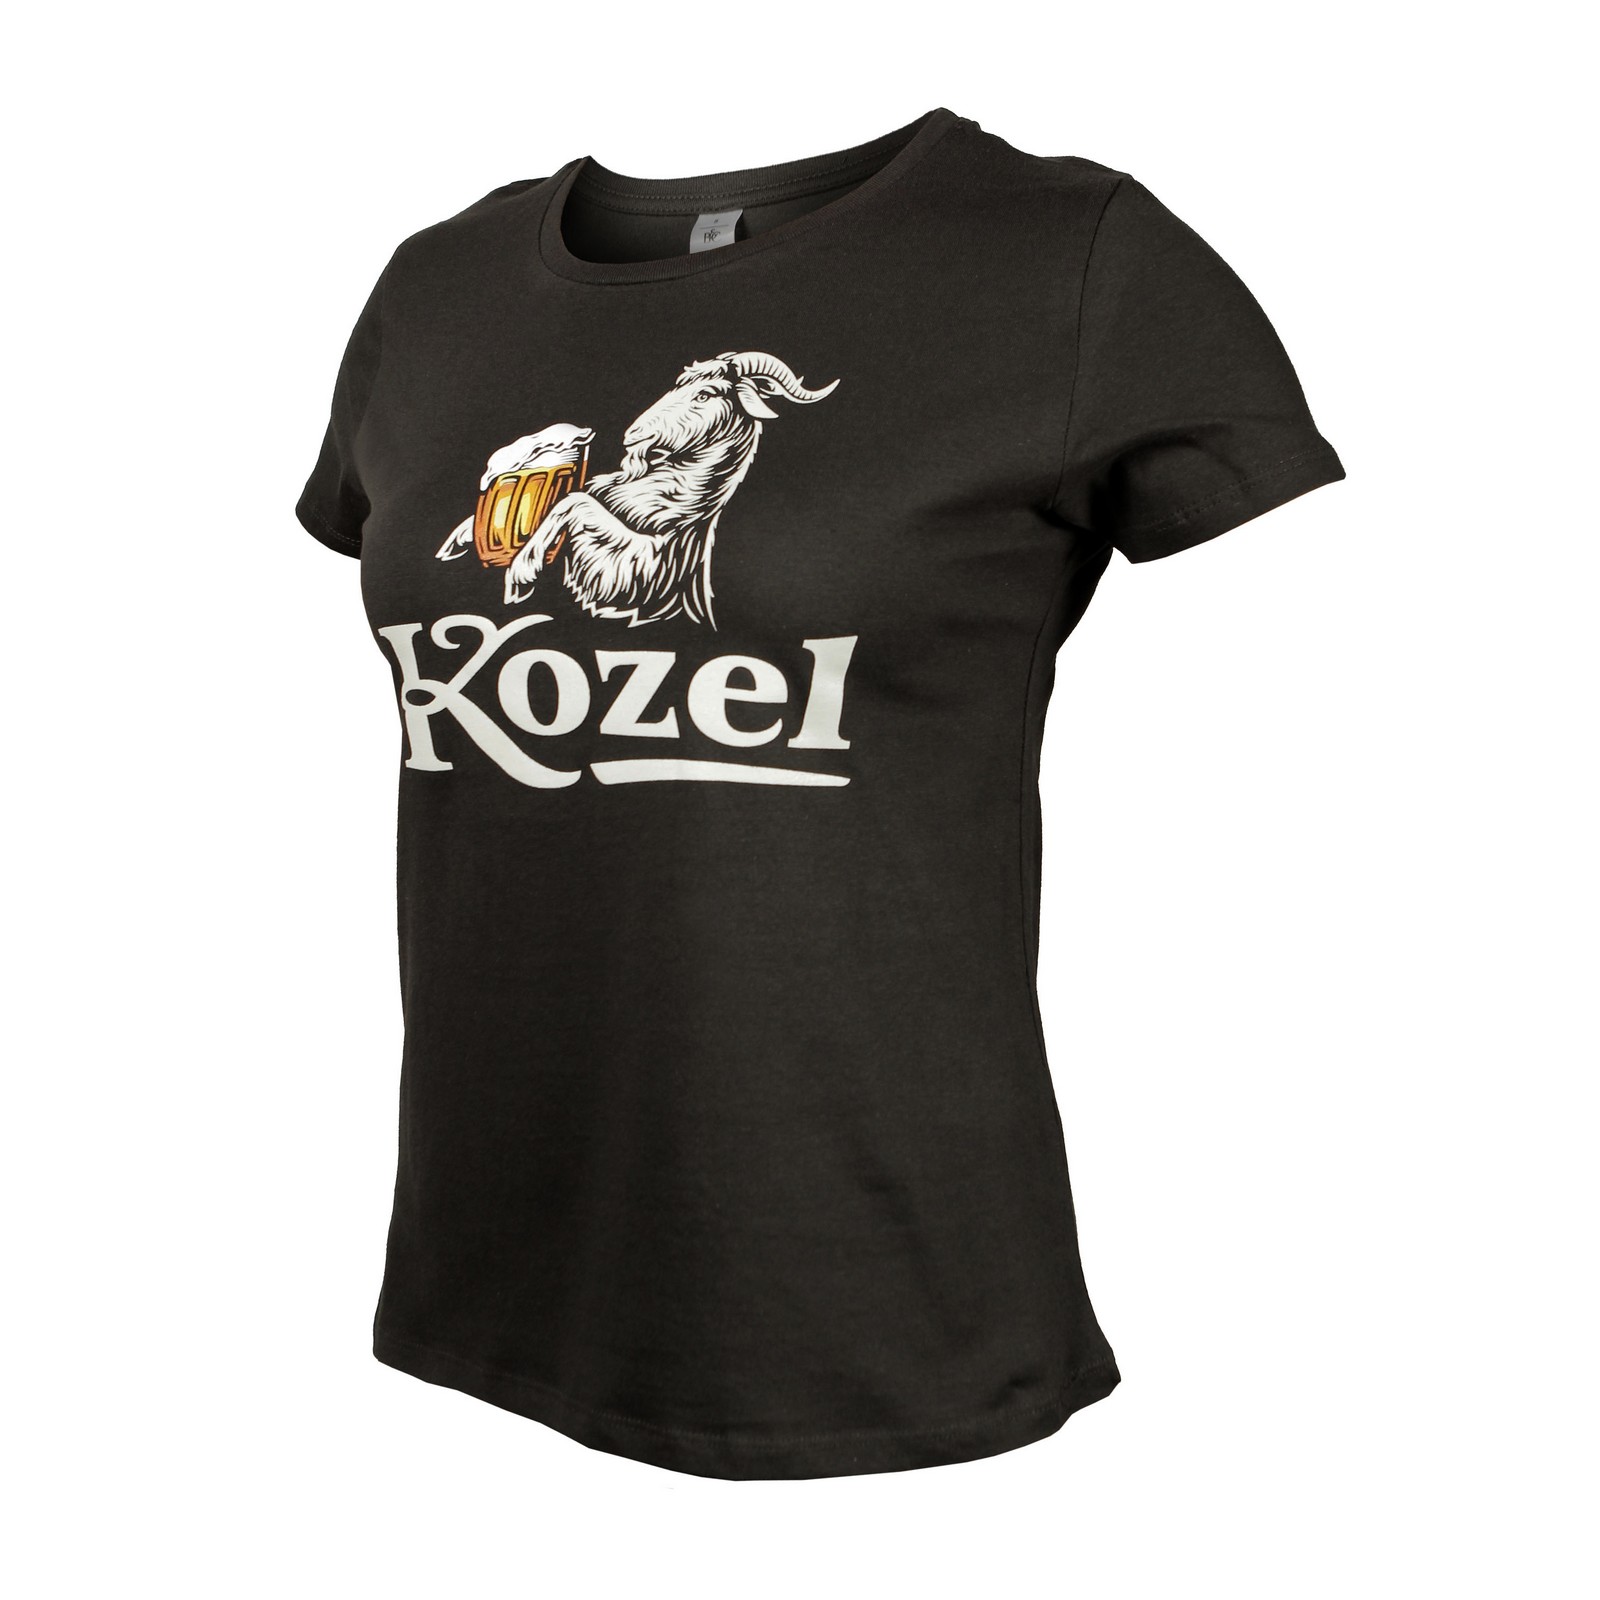 Damen-T-Shirt Kozel braun